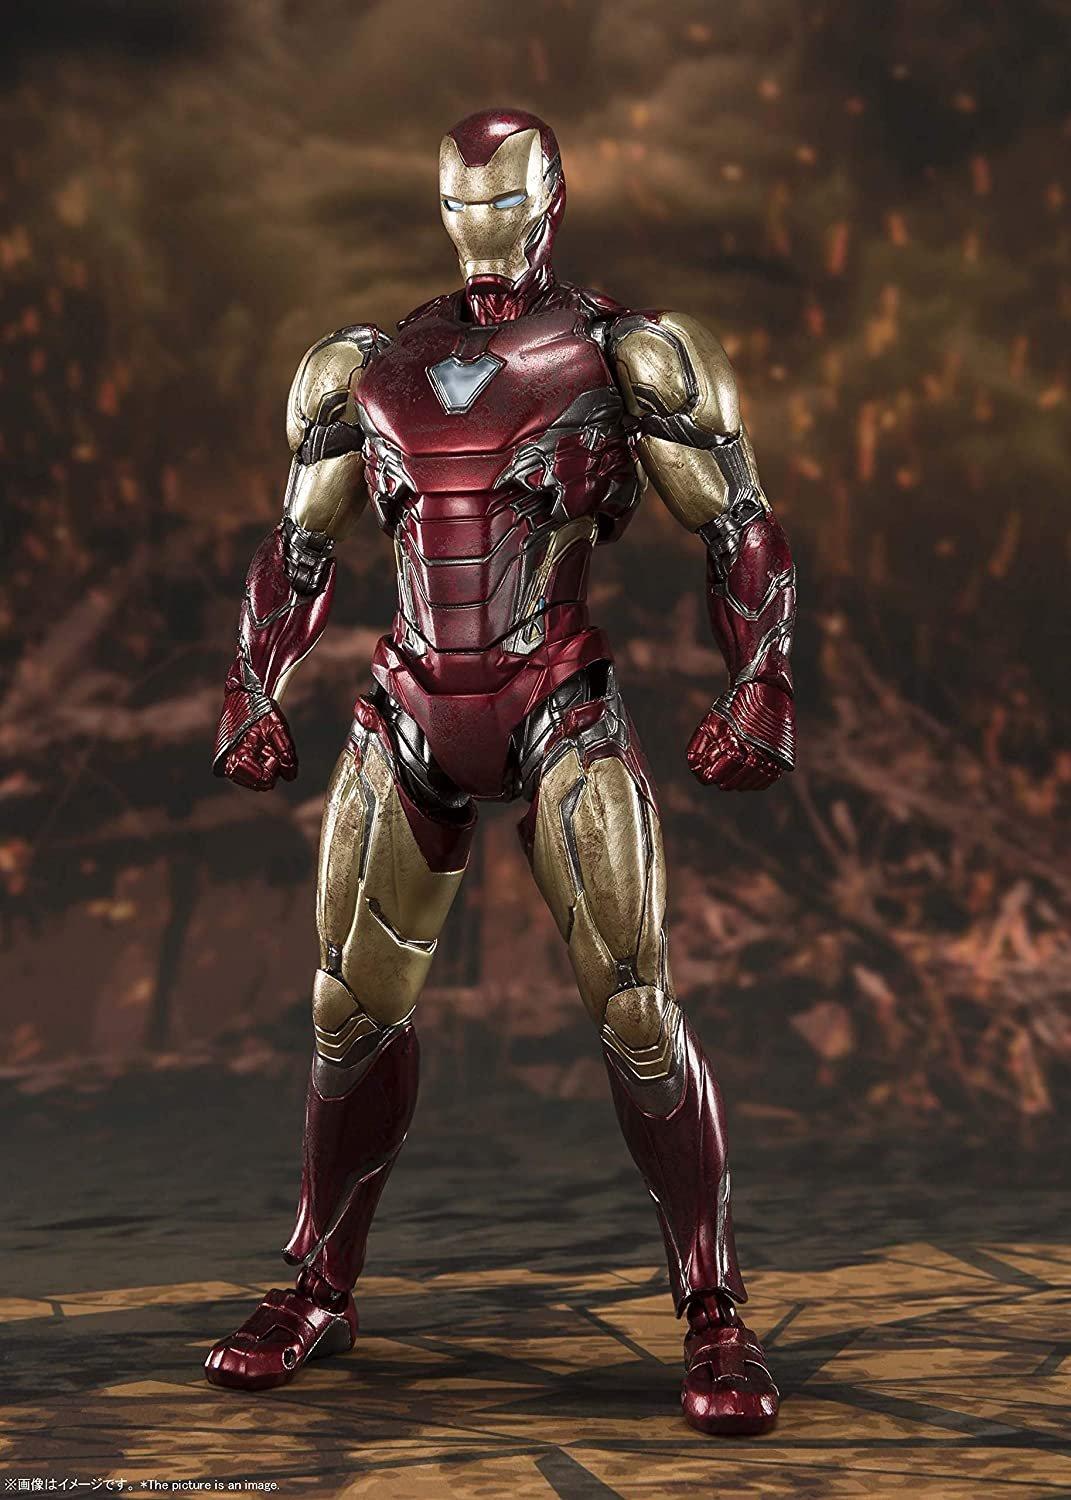 list item 1 of 4 Avengers: Endgame Iron Man Mark 85 Final Battle Edition S.H. Figuarts Action Figure